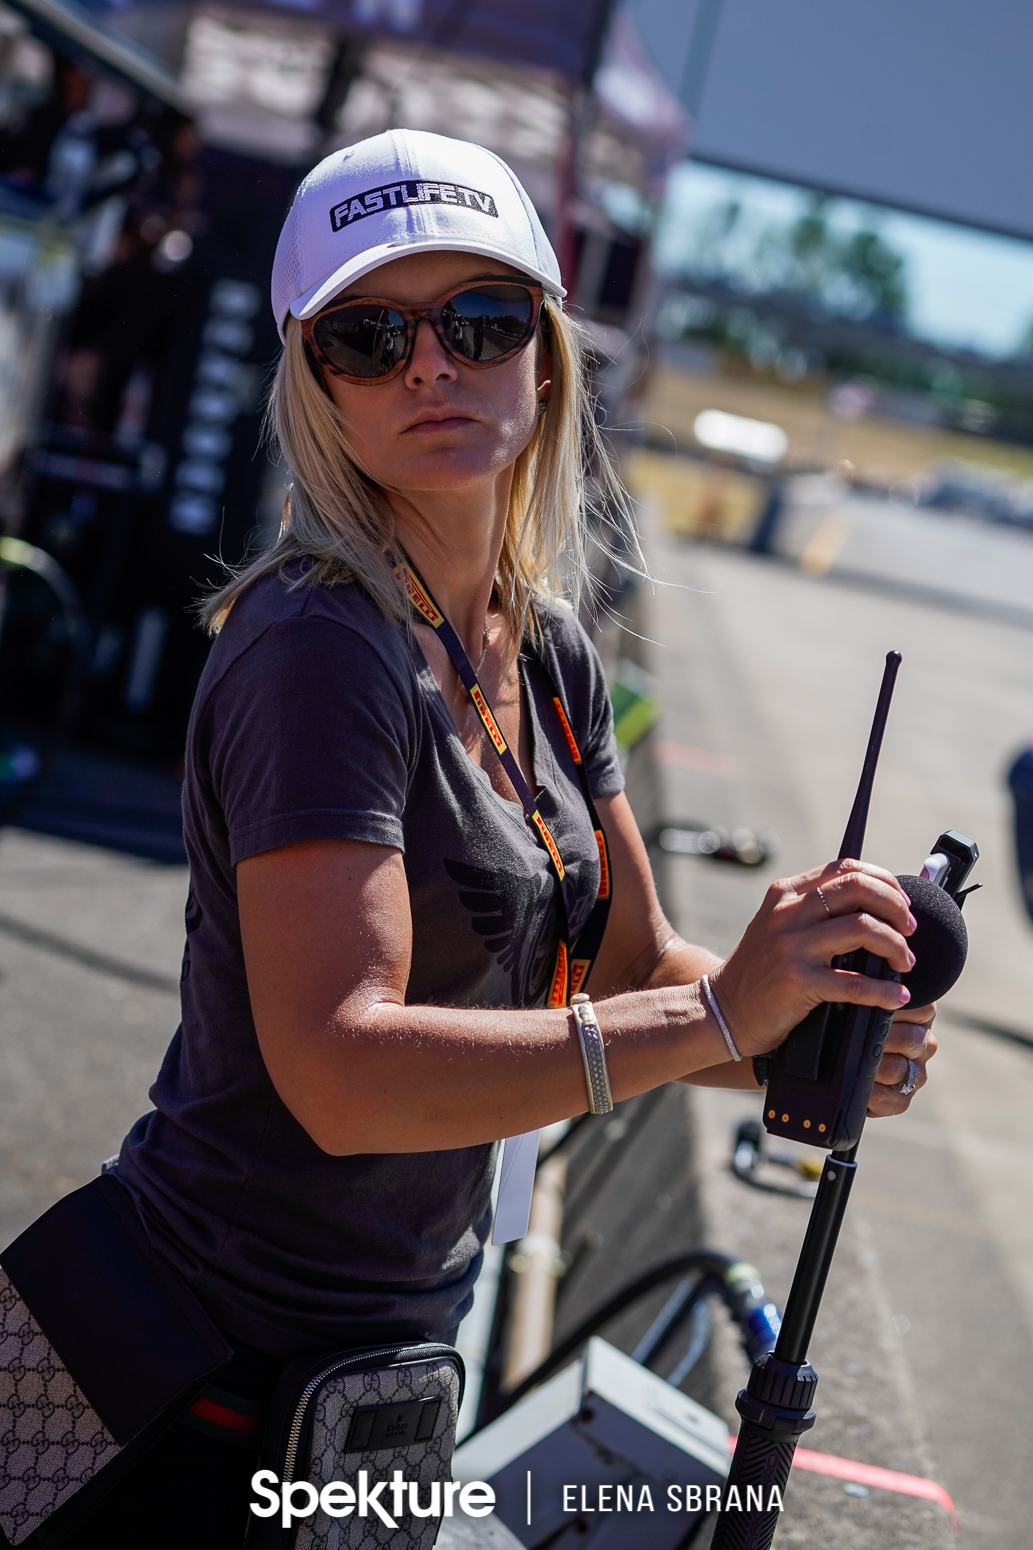 Earchphoto - Brooke De Boer in pit lane during a race. 